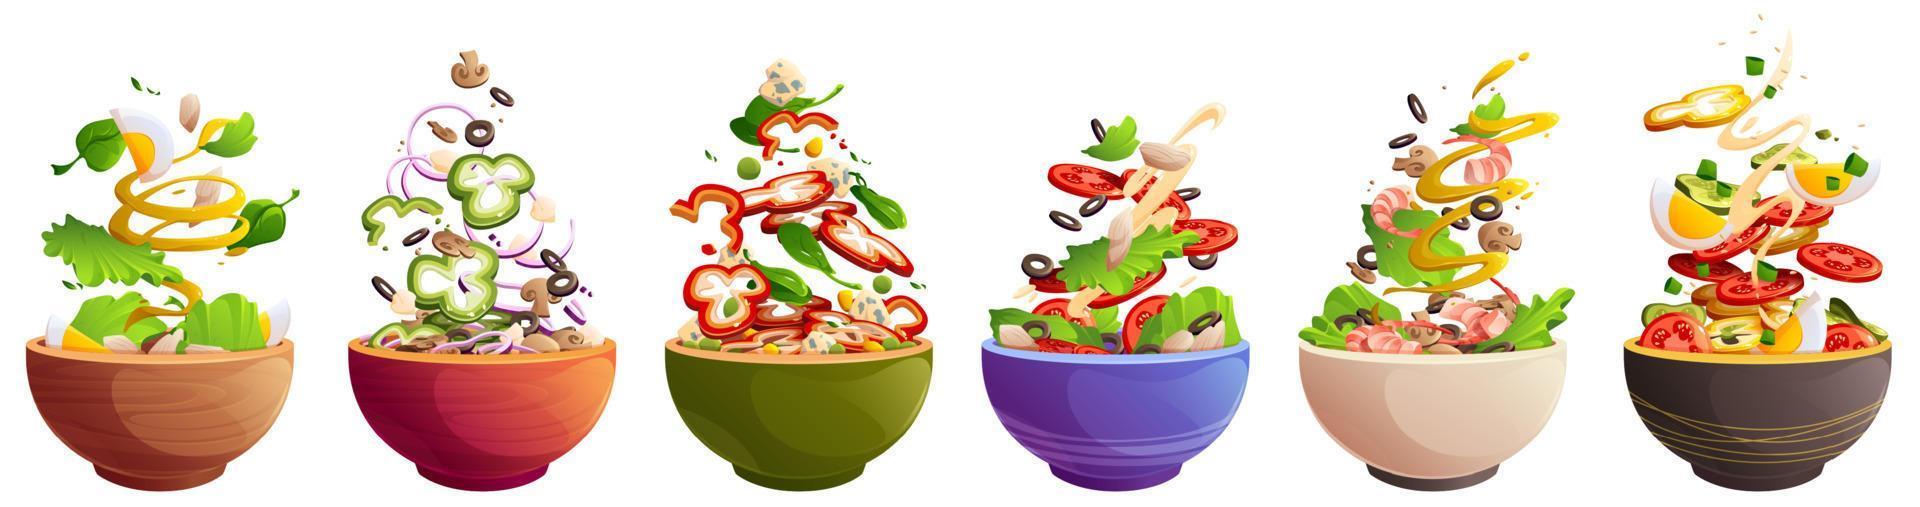 tigelas com salada, comida saudável com legumes vetor